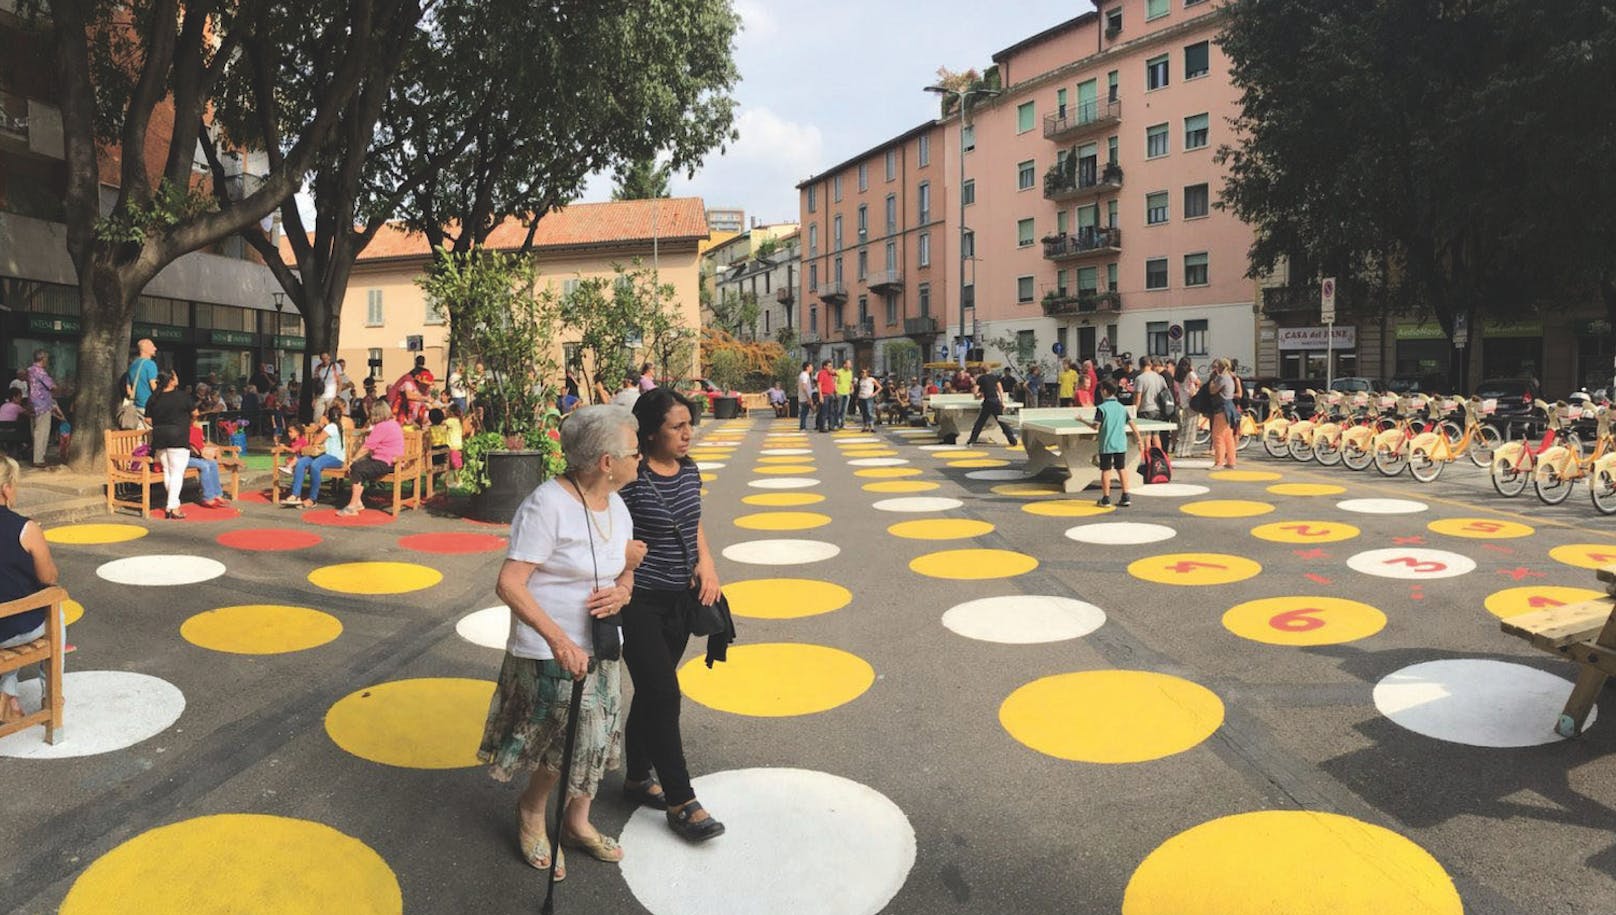 Vorbild für Wiener Ring? Menschen und Entspannung statt Verkehrskollaps in "beruhigter Zone" in Mailand